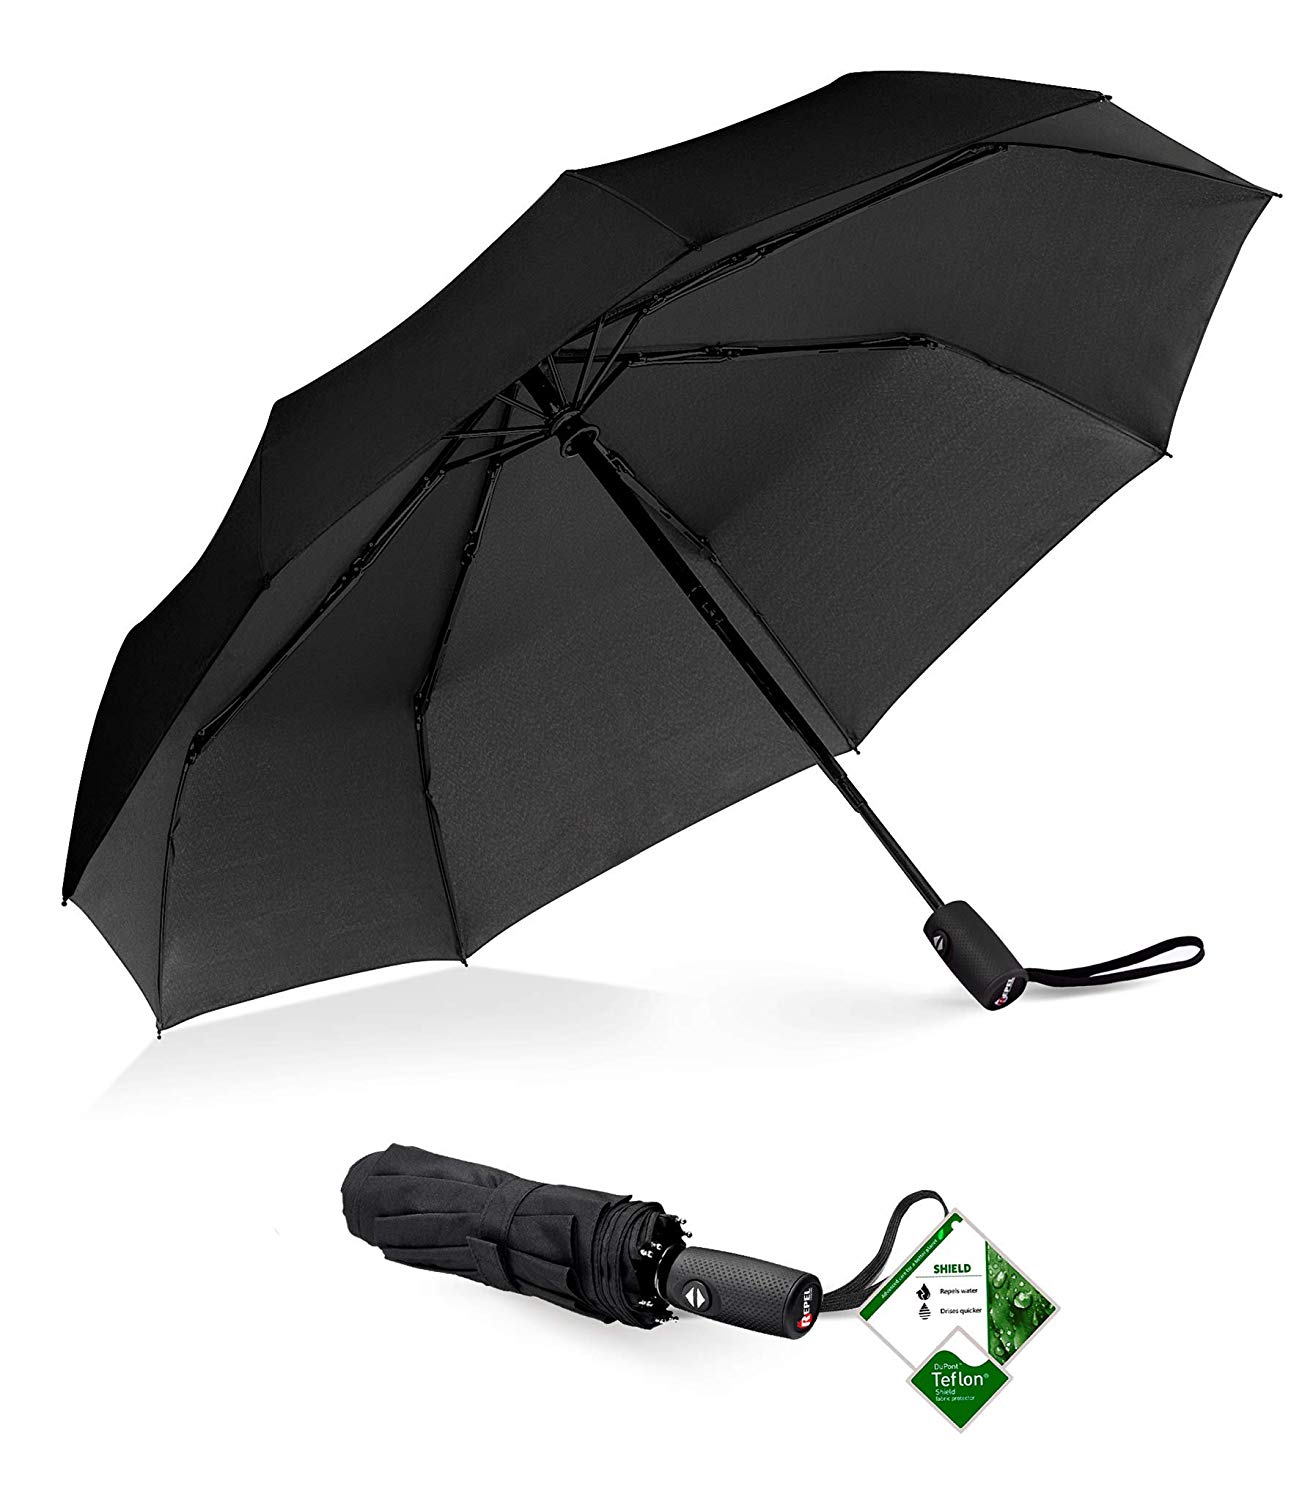 Repel Windproof Travel Umbrella.jpg